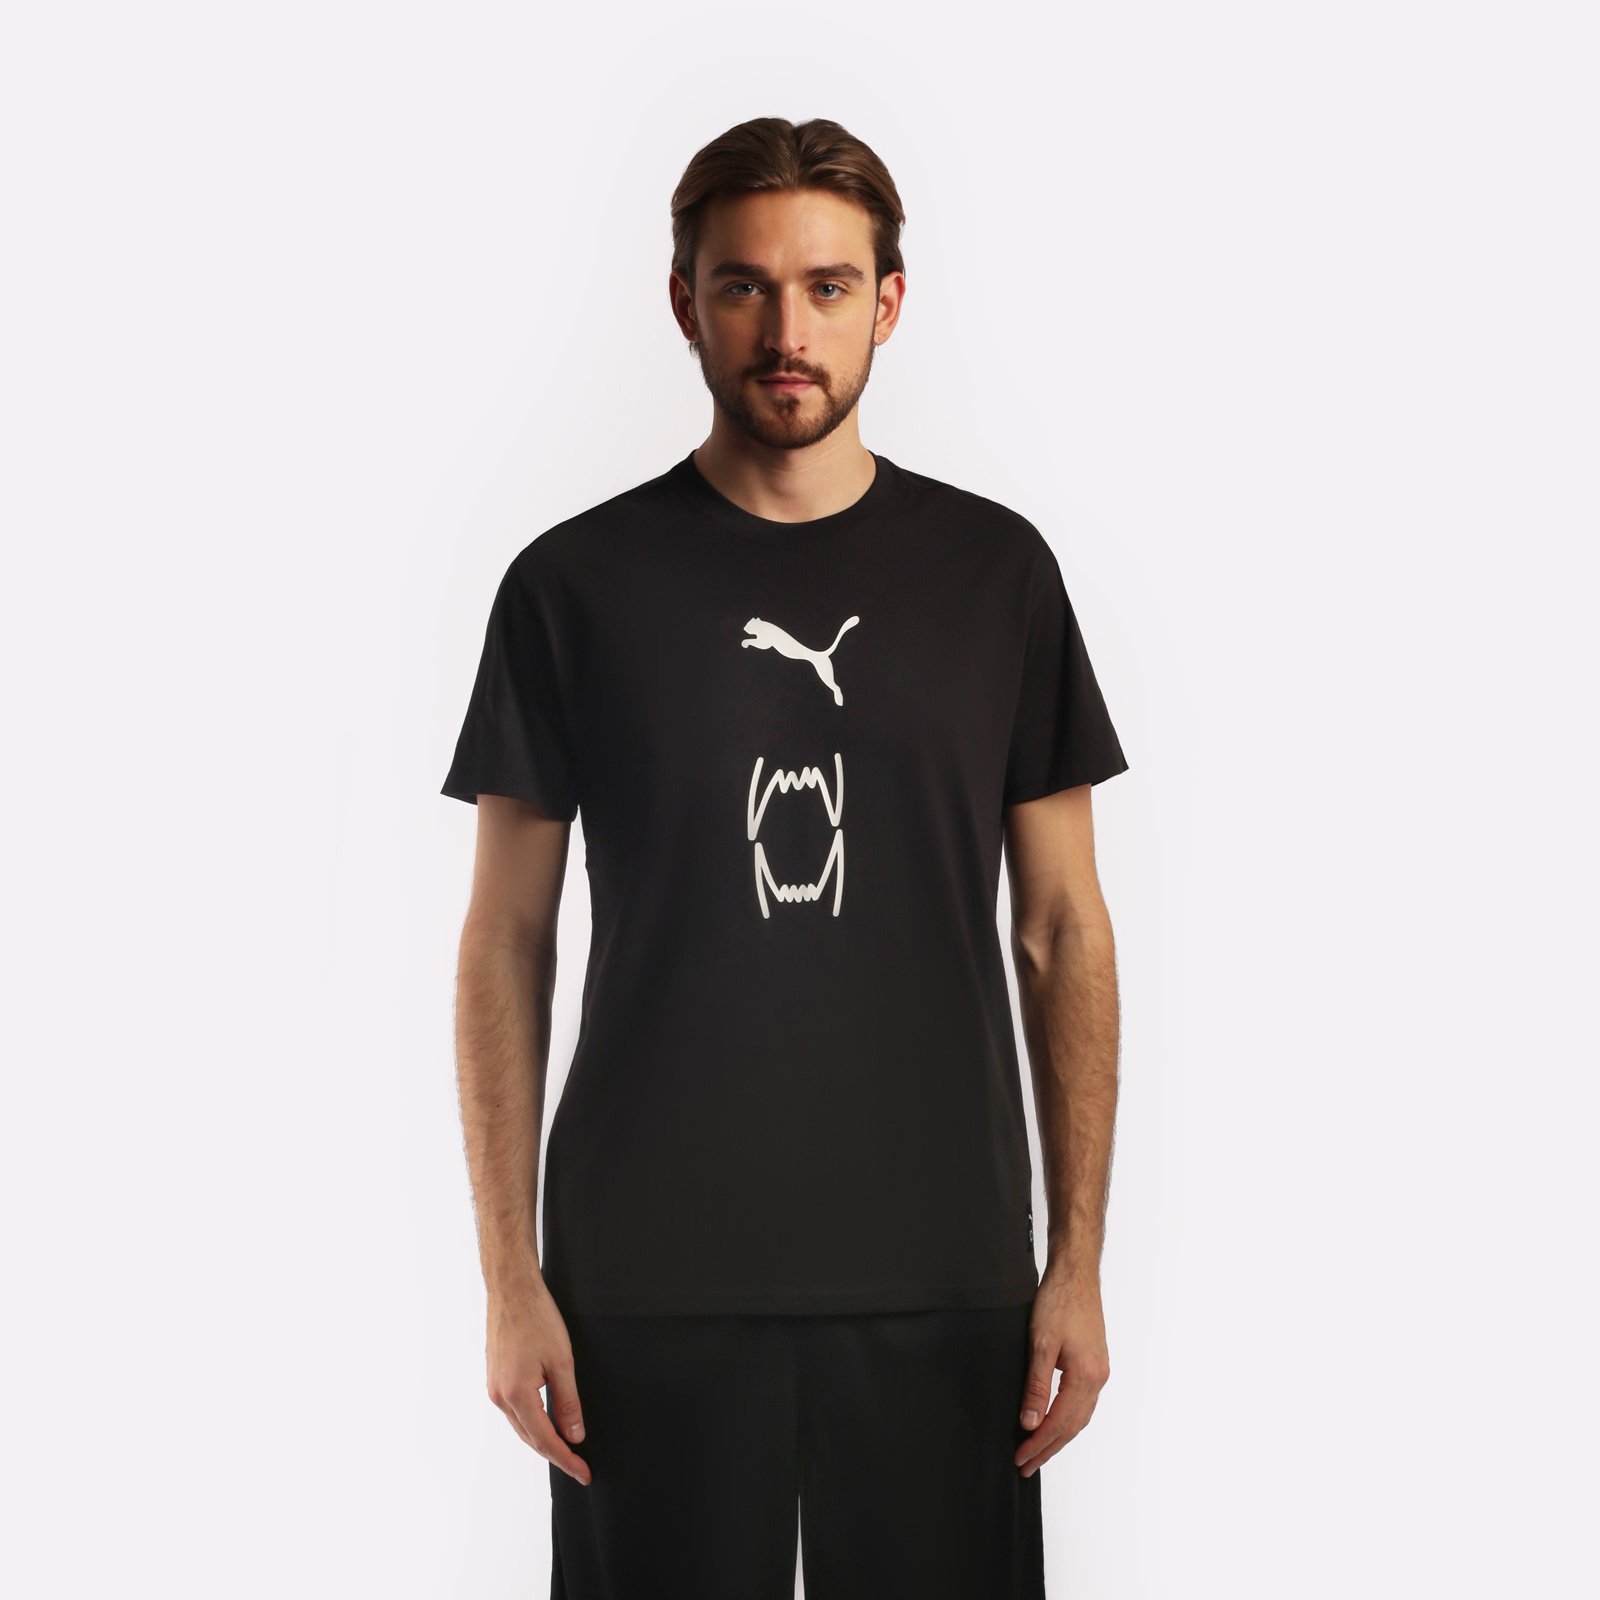 мужская футболка PUMA Franchise Core Tee  (53856901)  - цена, описание, фото 1